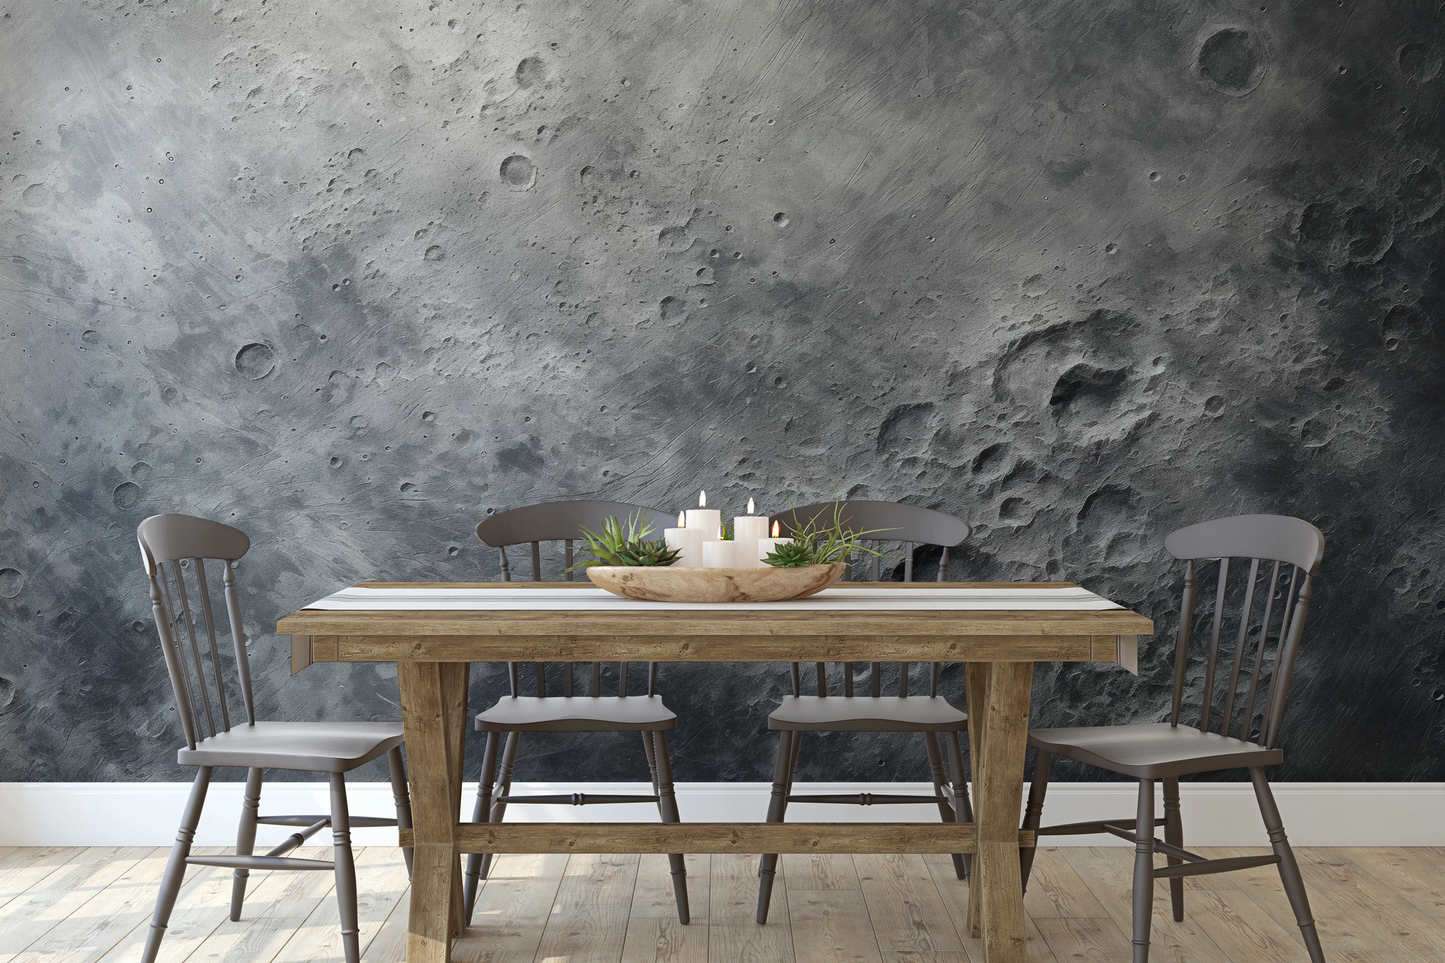 Fototapeta malowana o nazwie Lunar Detail pokazana w aranżacji wnętrza.